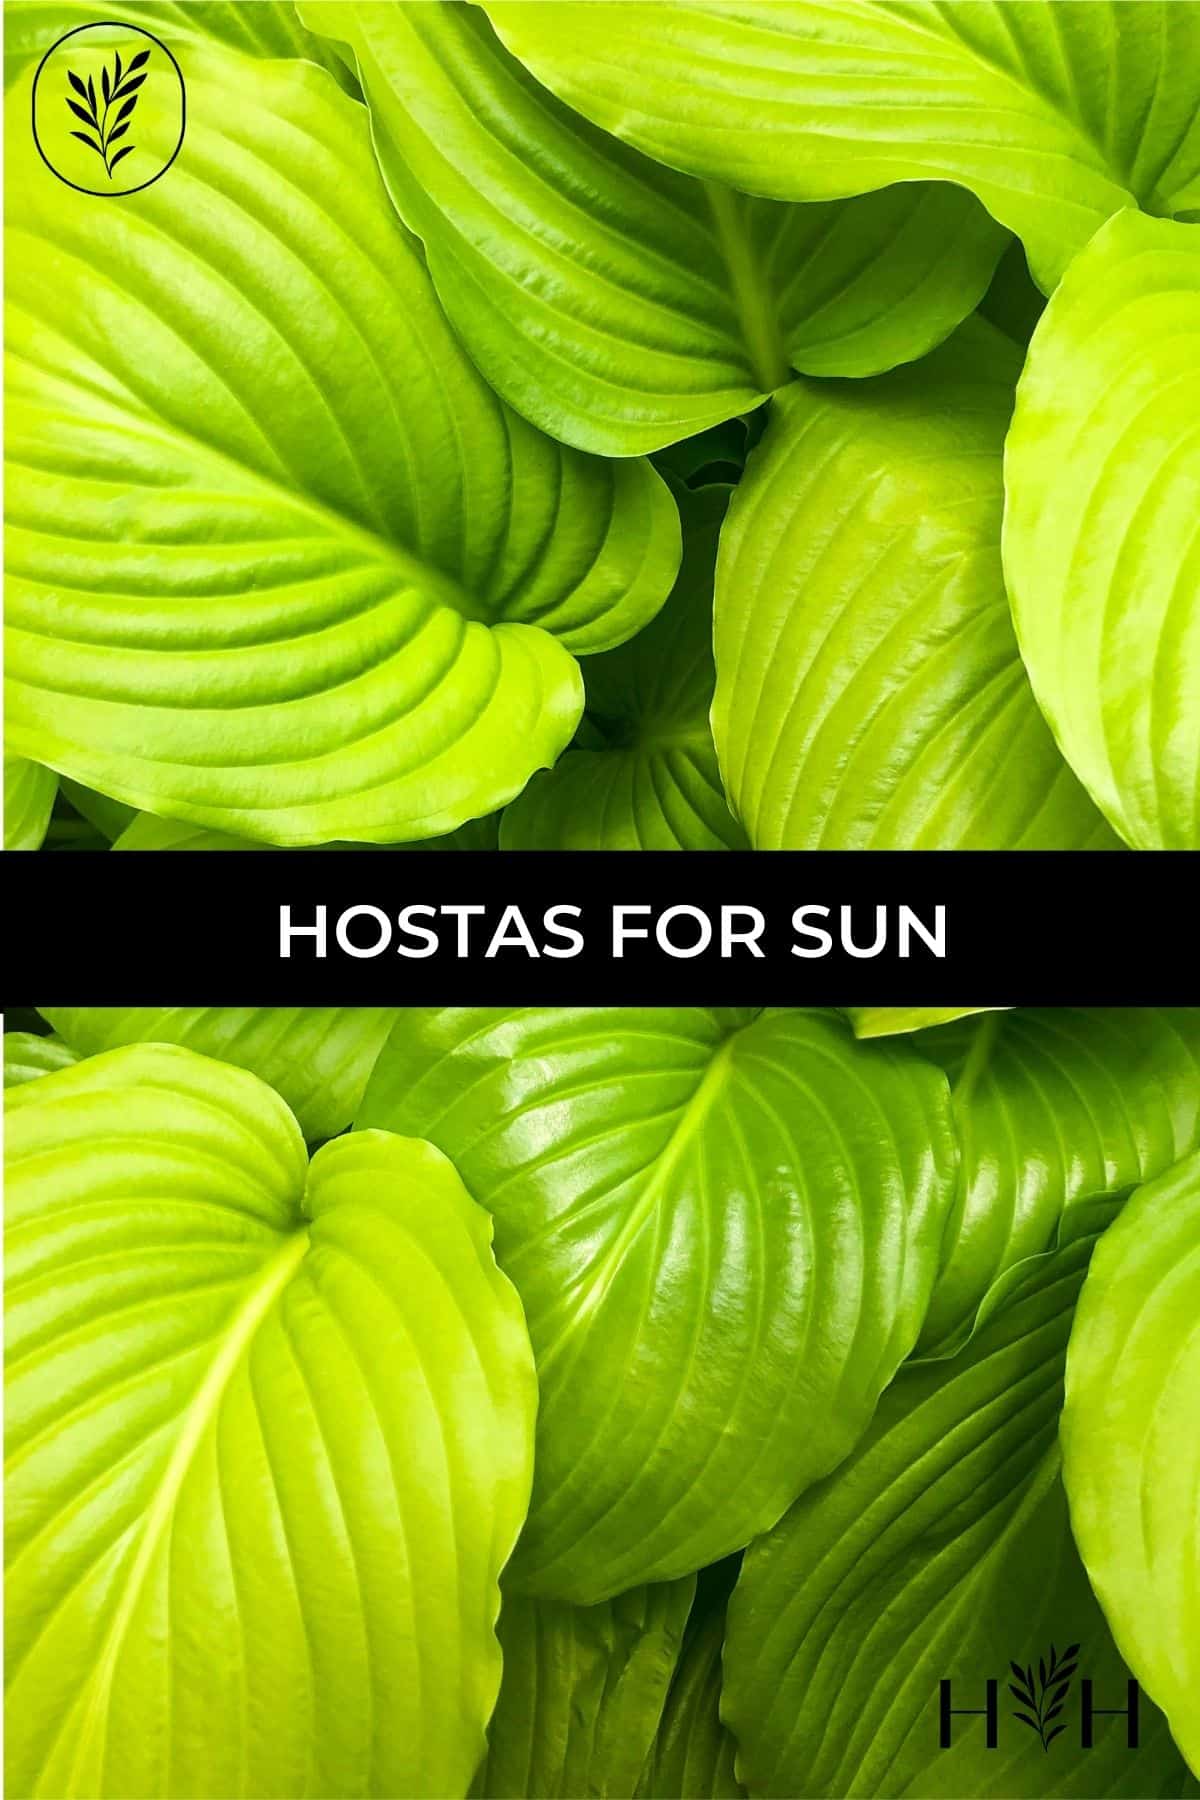 Hostas for sun via @home4theharvest